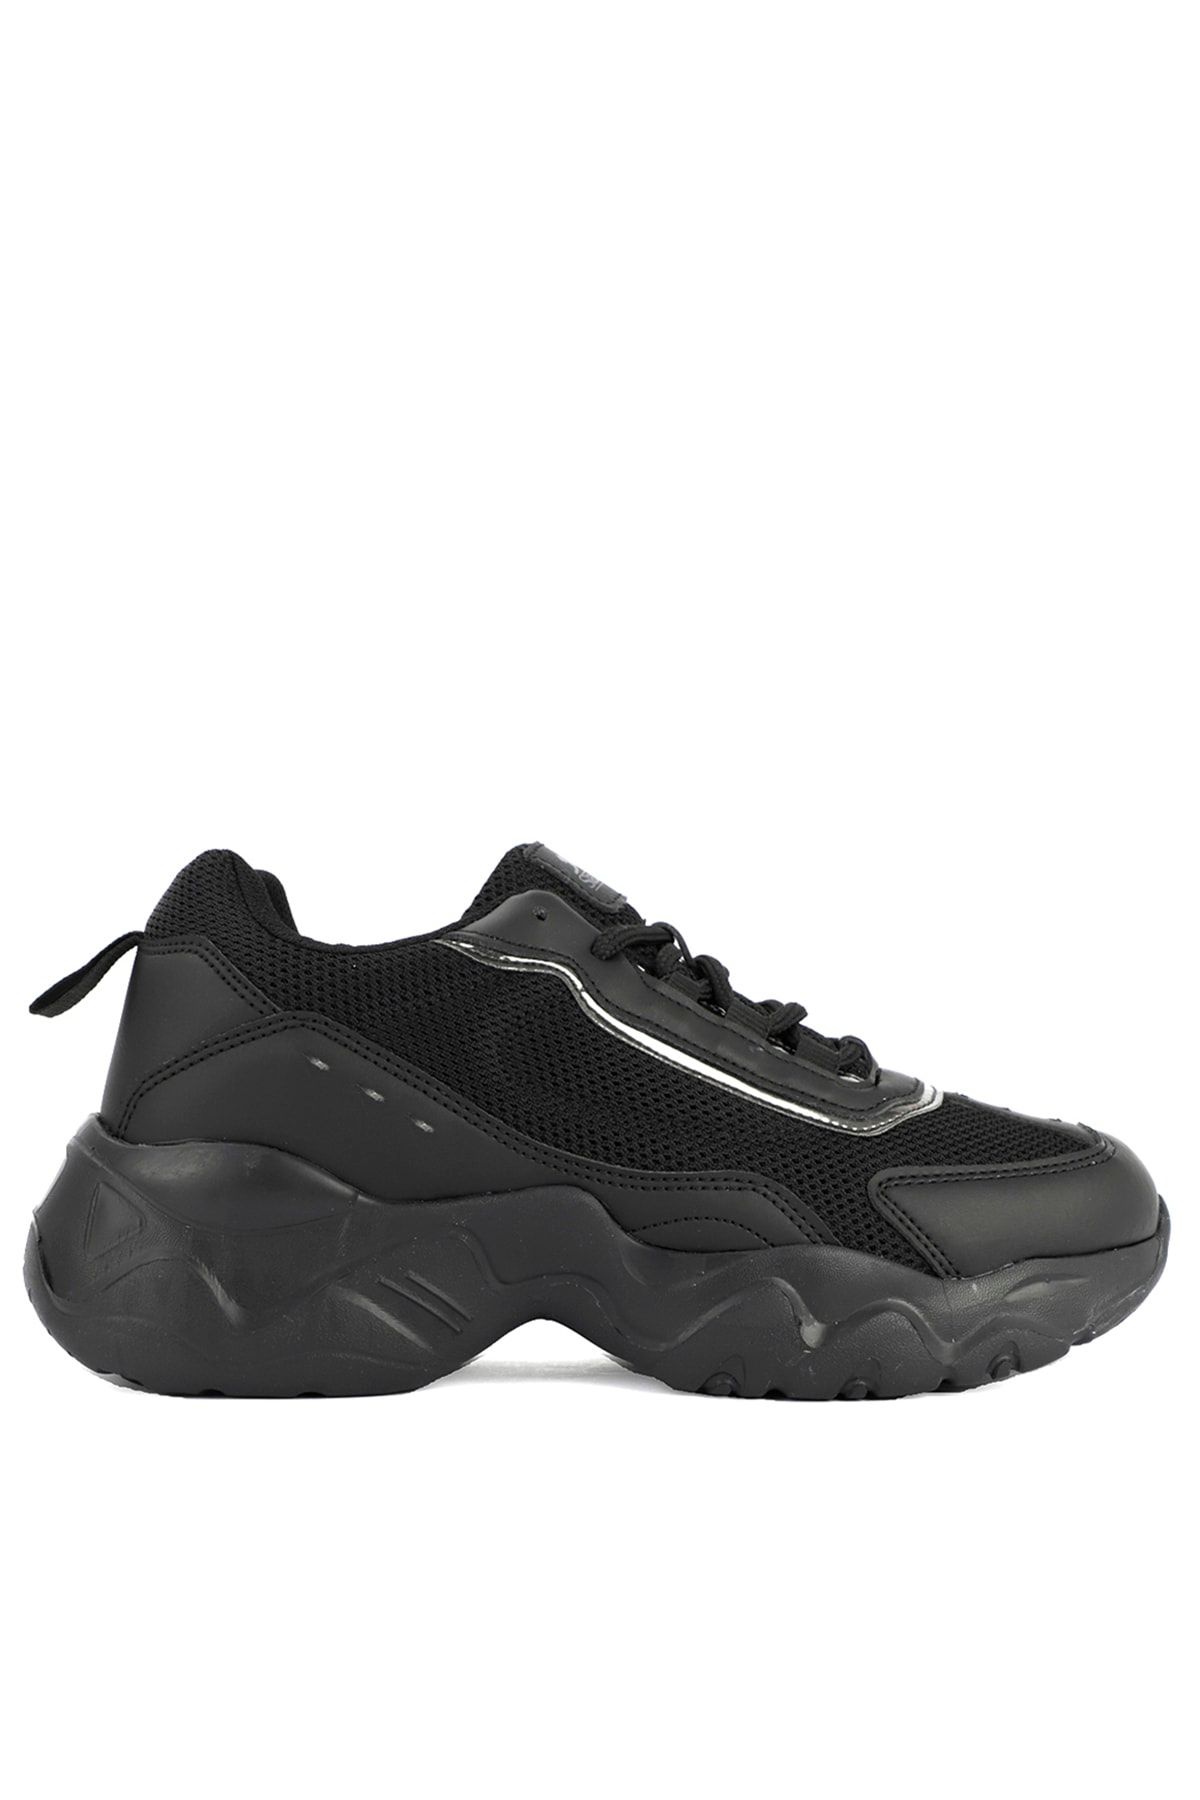 Slazenger Sofıa Sneaker Kadın Ayakkabı Siyah / Siyah Sa11lk045